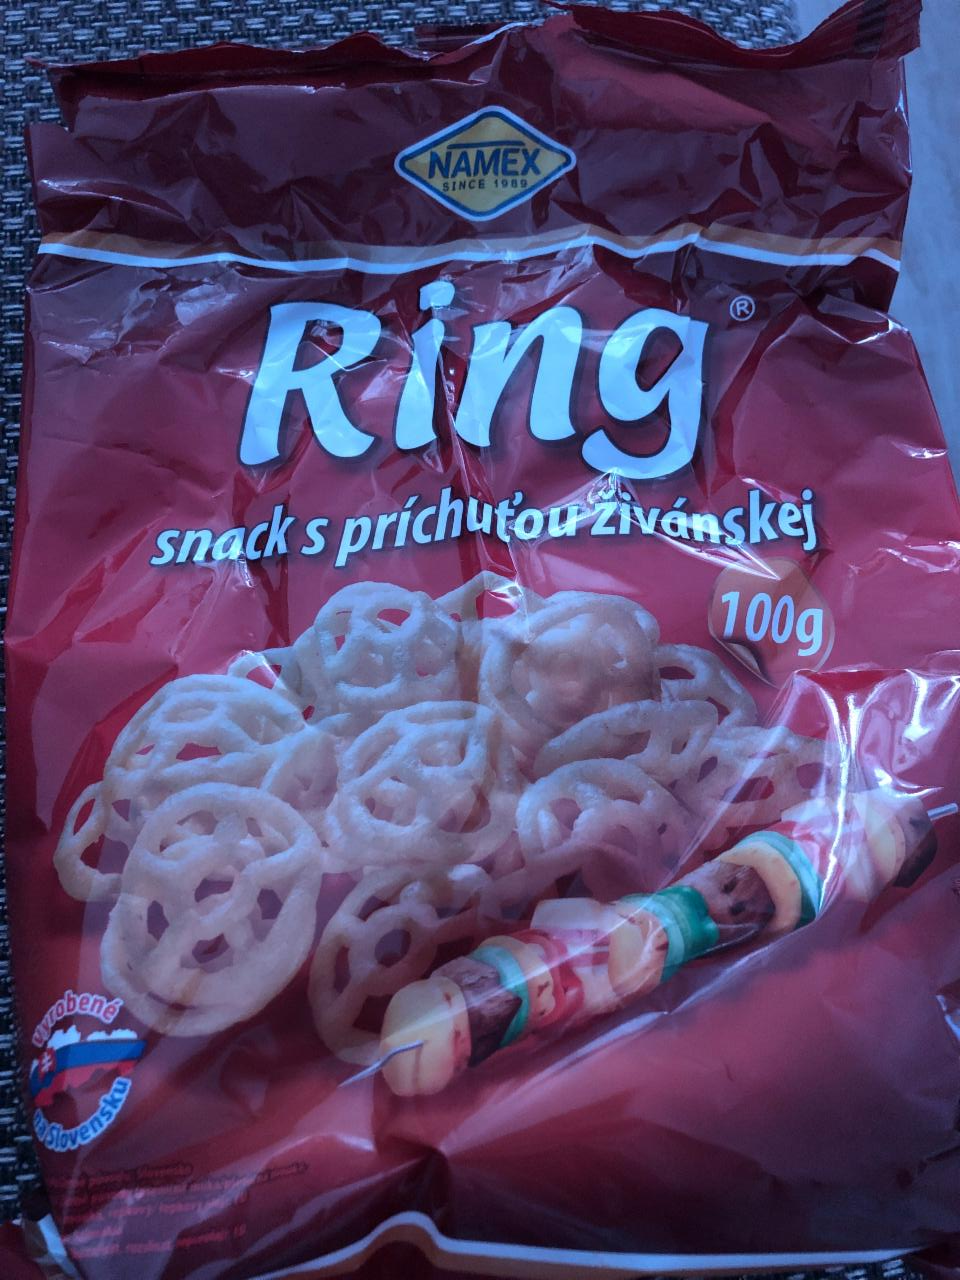 Fotografie - Ring snack s príchuťou živánskej Namex